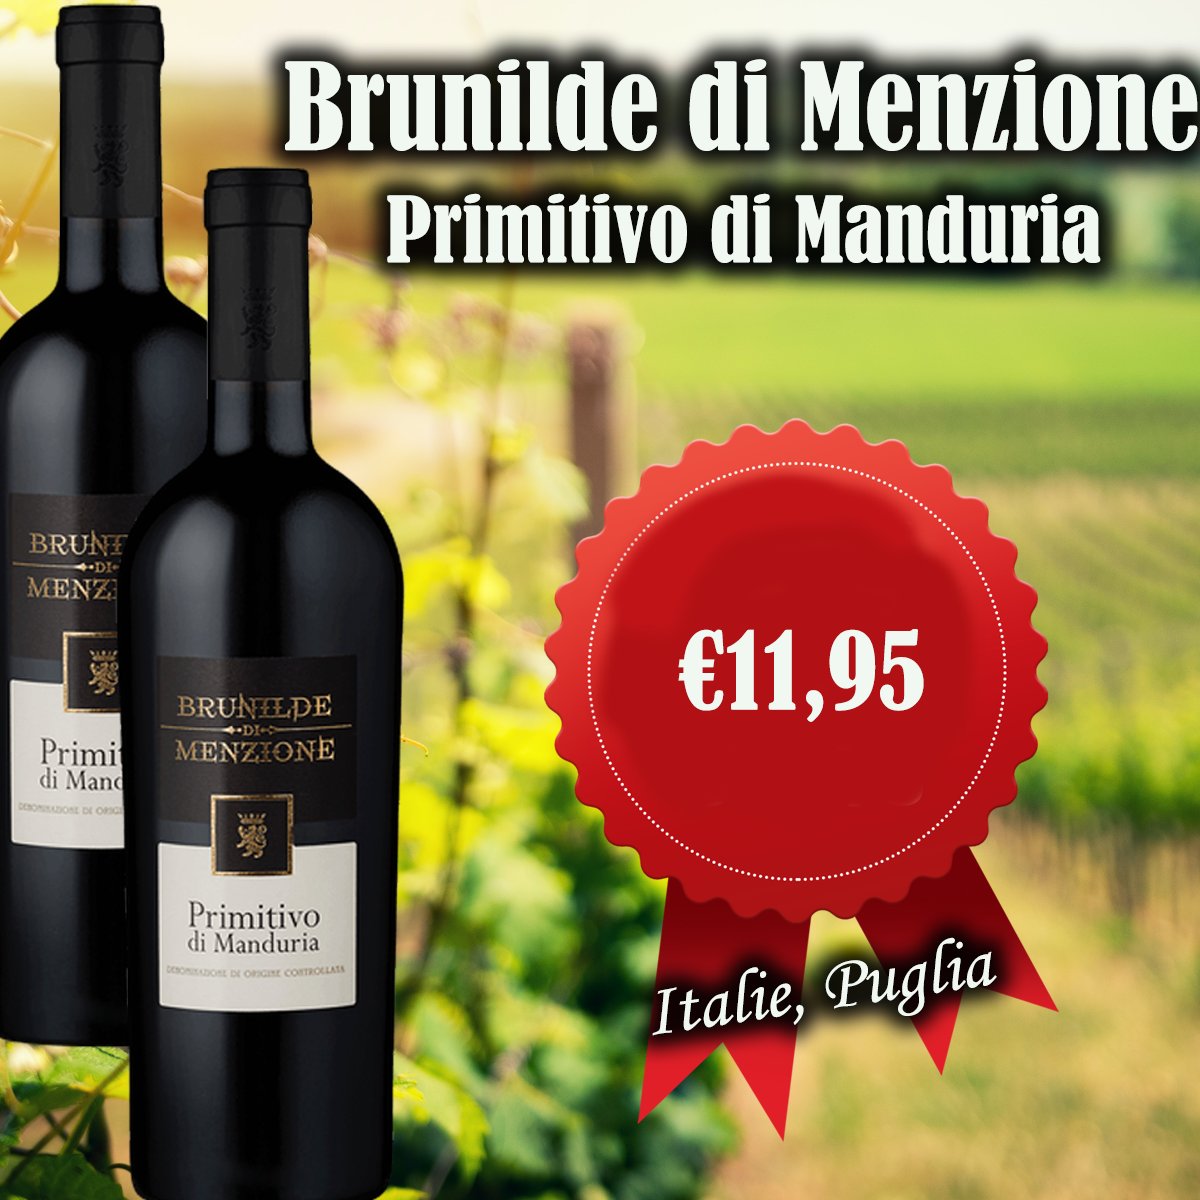 Brunilde di Menzione Primitivo di Manduria DOC
wijnhandelgrandcave.nl/nl/1435-brunil…
 #wijn #wine #winelover #vino #instawine #winestagram #genieten #winelife #wijntje #winetime #wijnisfijn #food #winegeek